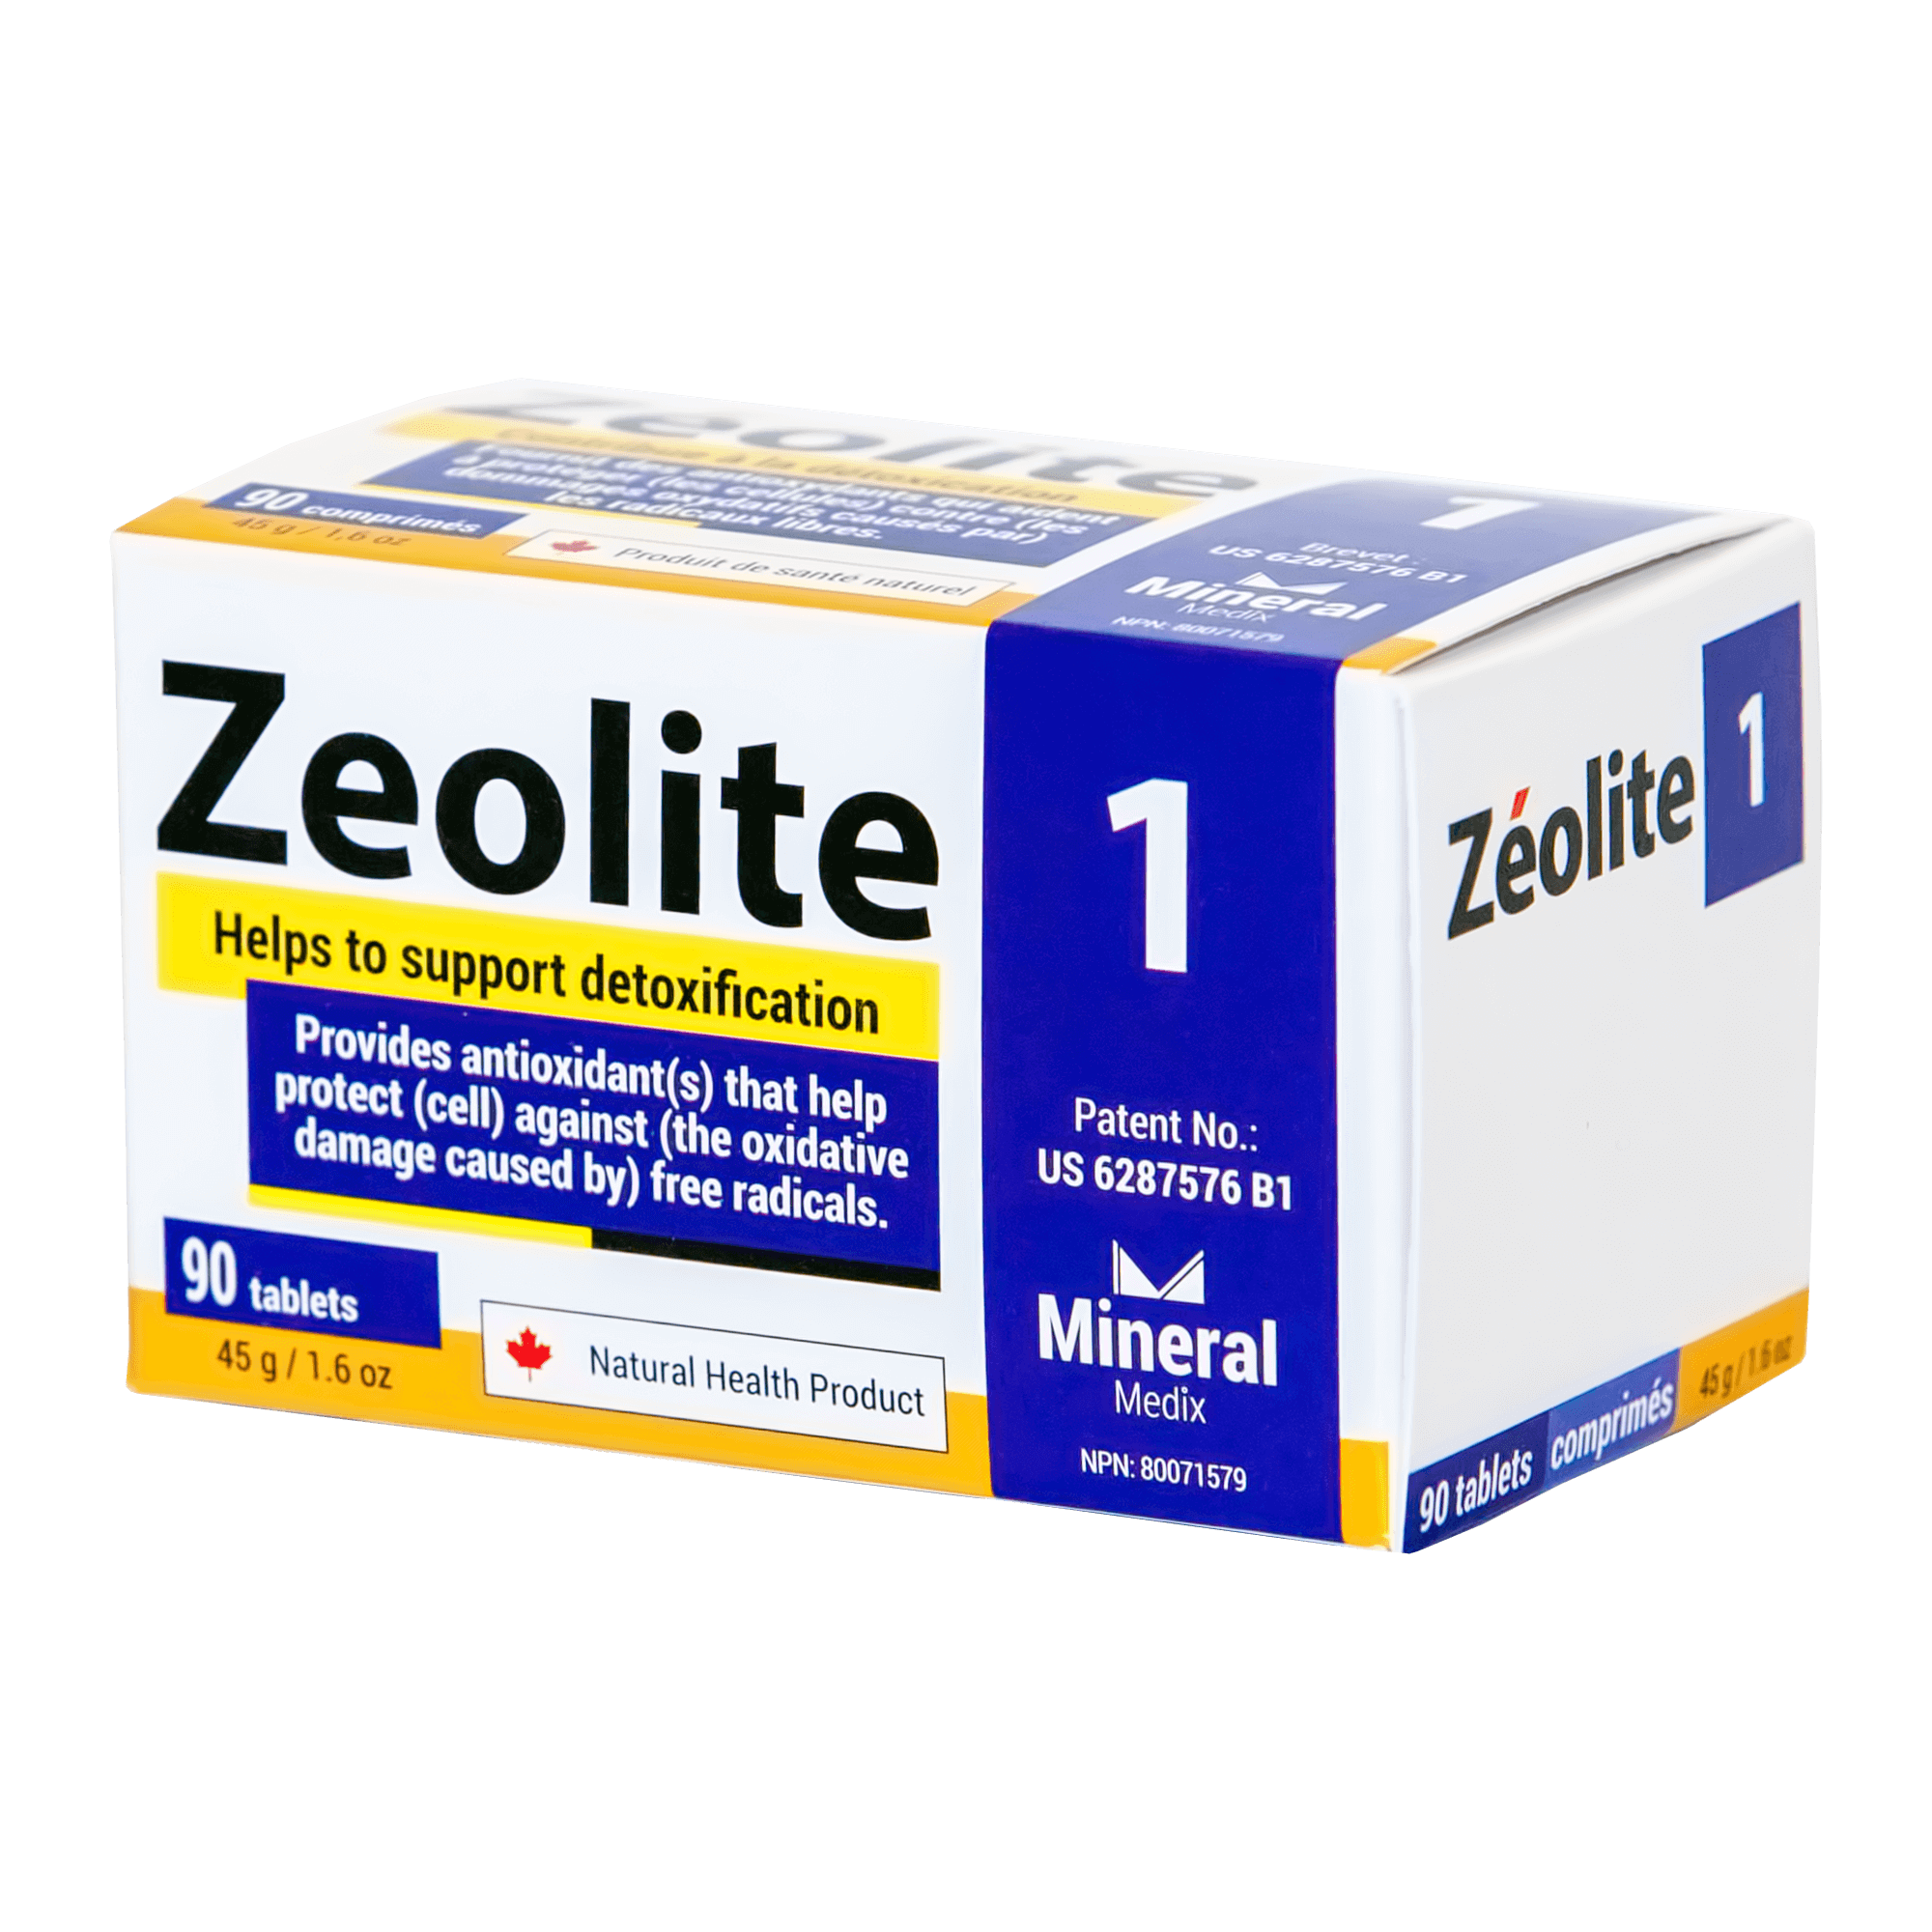 zeolite1